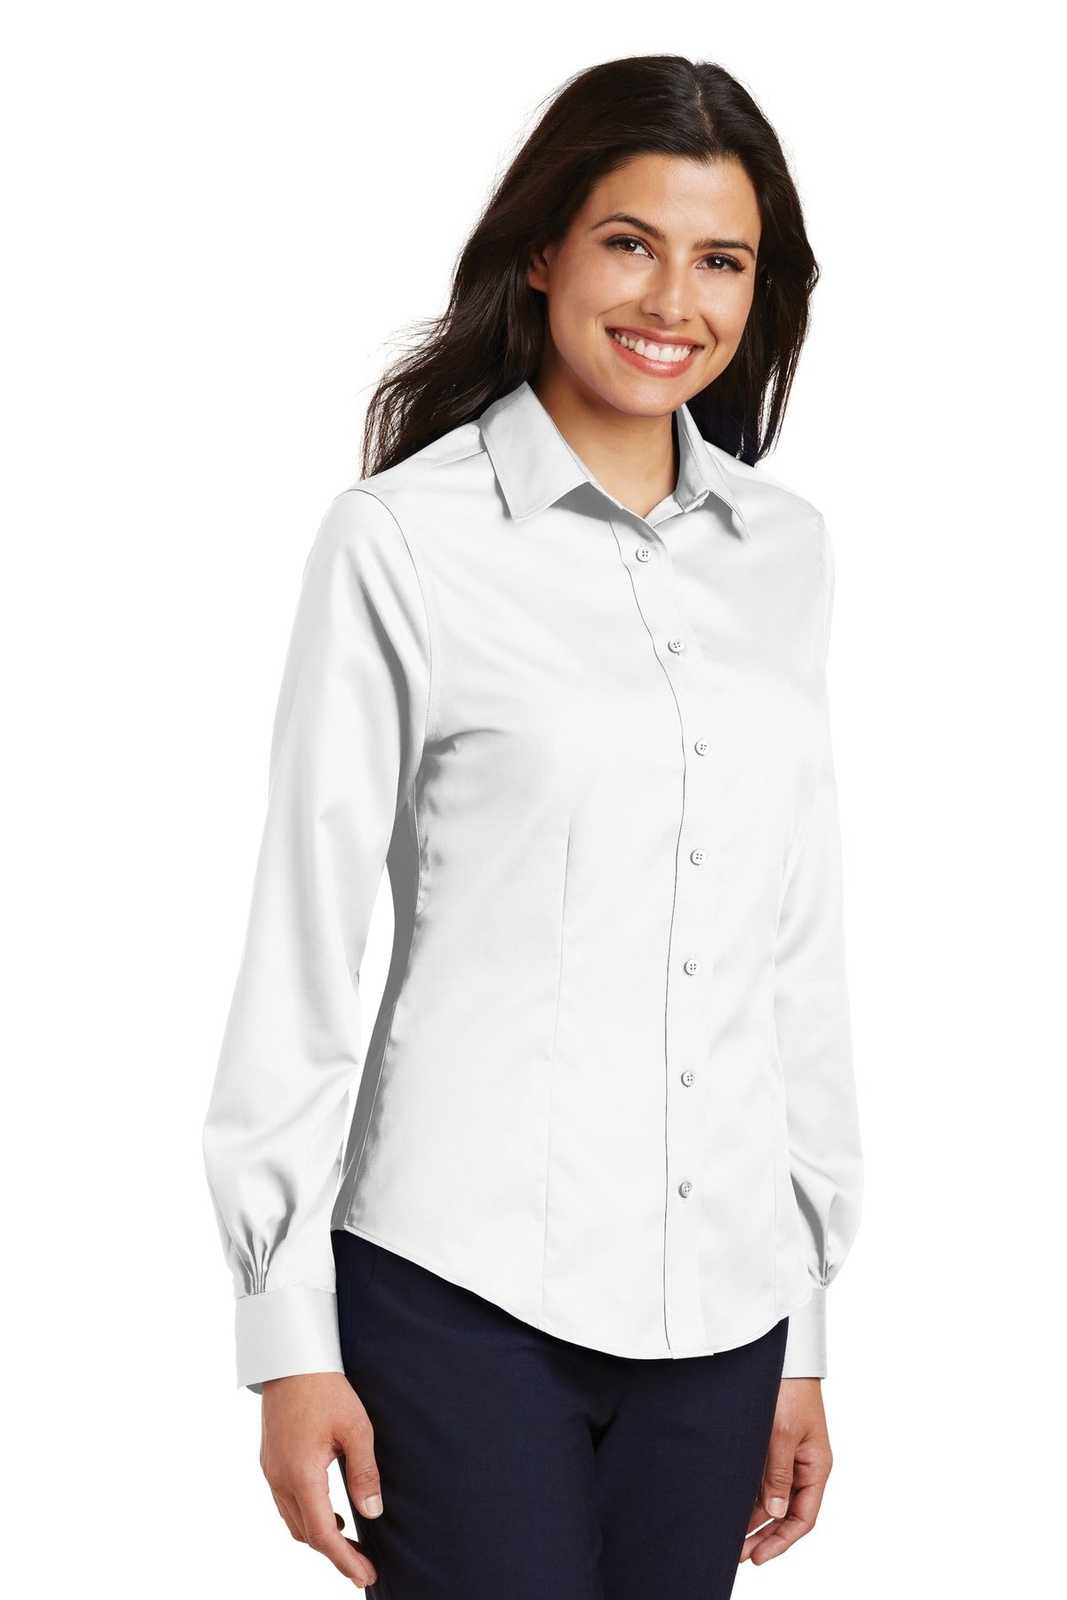 Port Authority L638 Ladies Non-Iron Twill Shirt - White - HIT a Double - 4